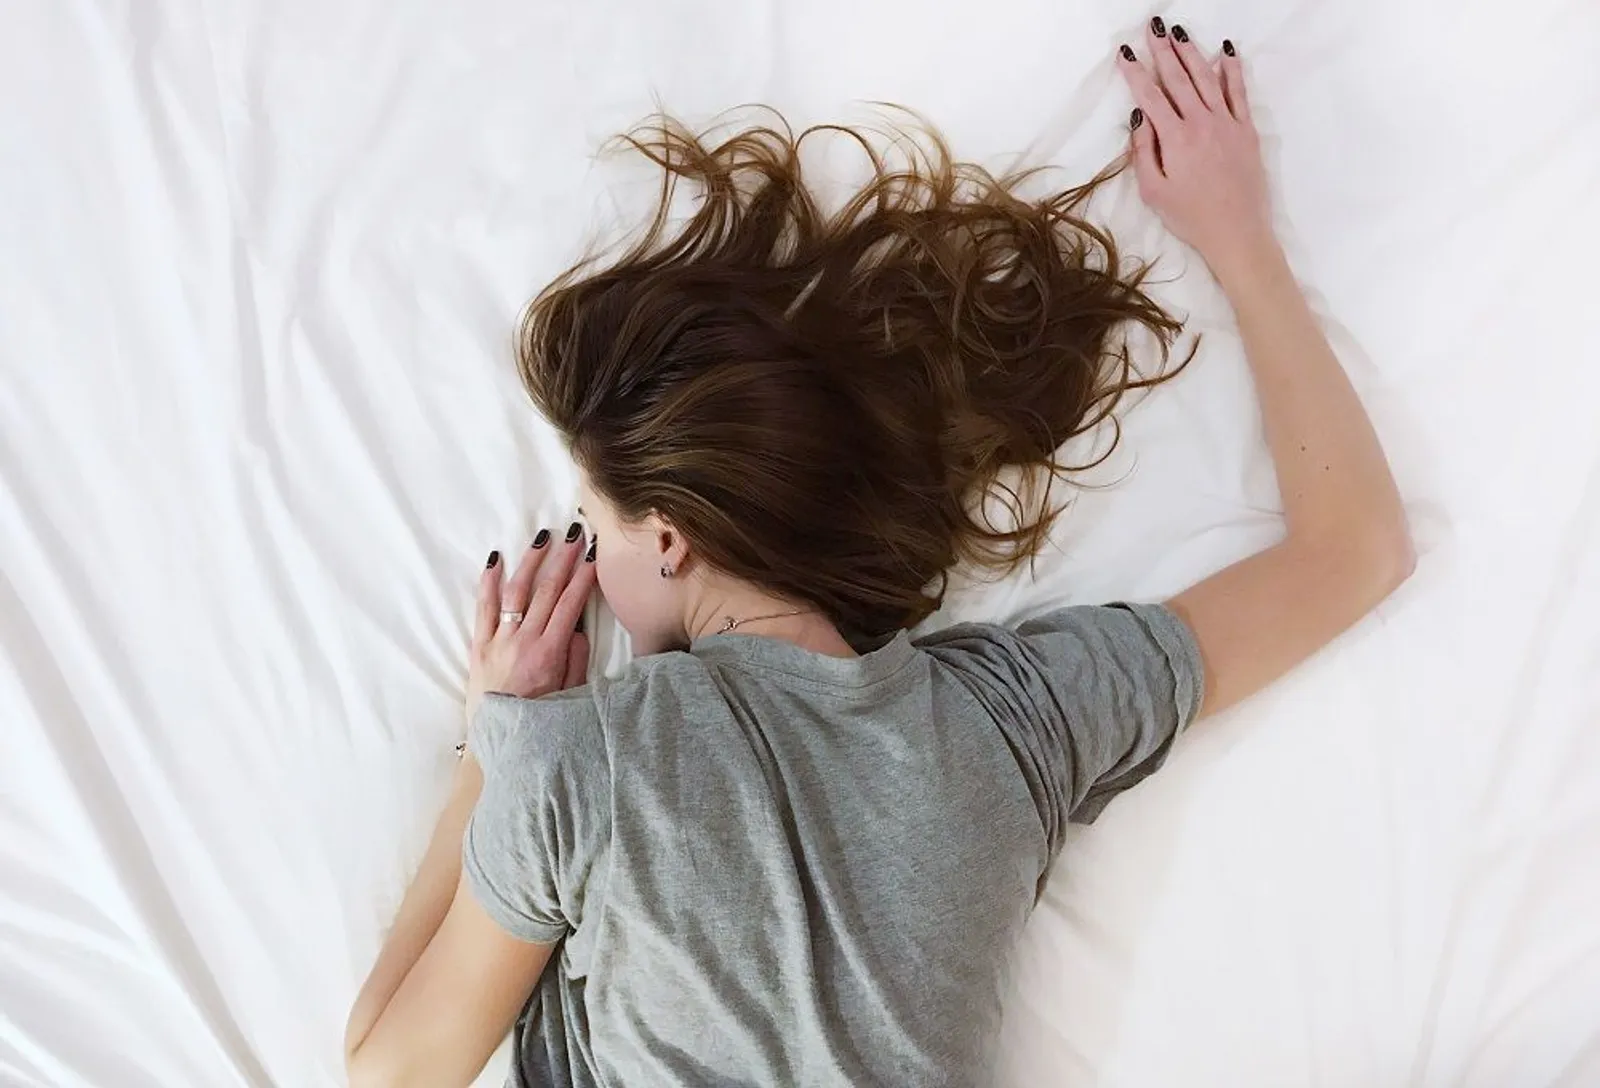 Turunkan Berat Badan, 7 Kebiasaan Sebelum Tidur Ini Patut Kamu Coba